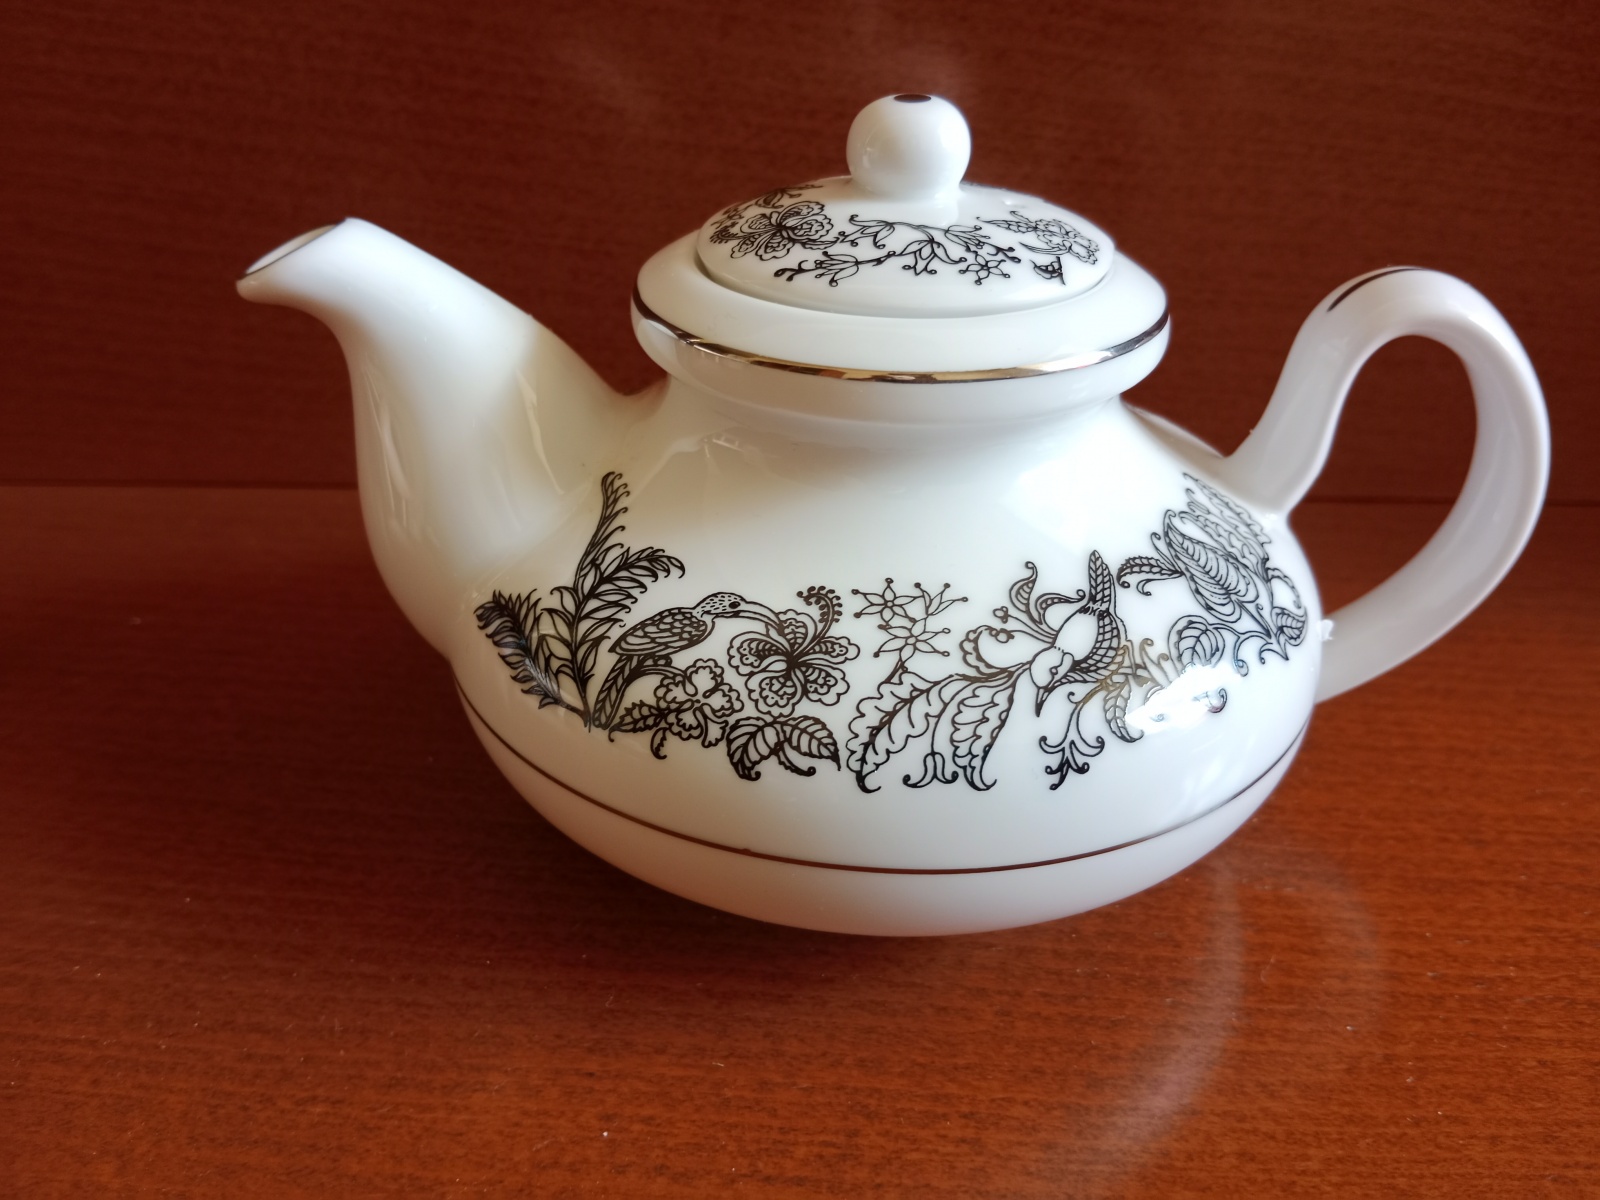 Čaje Mlesna Čajová konvice obsah 0,4 l. Pro Mlesnu vyrobila Noritake Noritake - Mlesna pravý čaj z Cejlonu